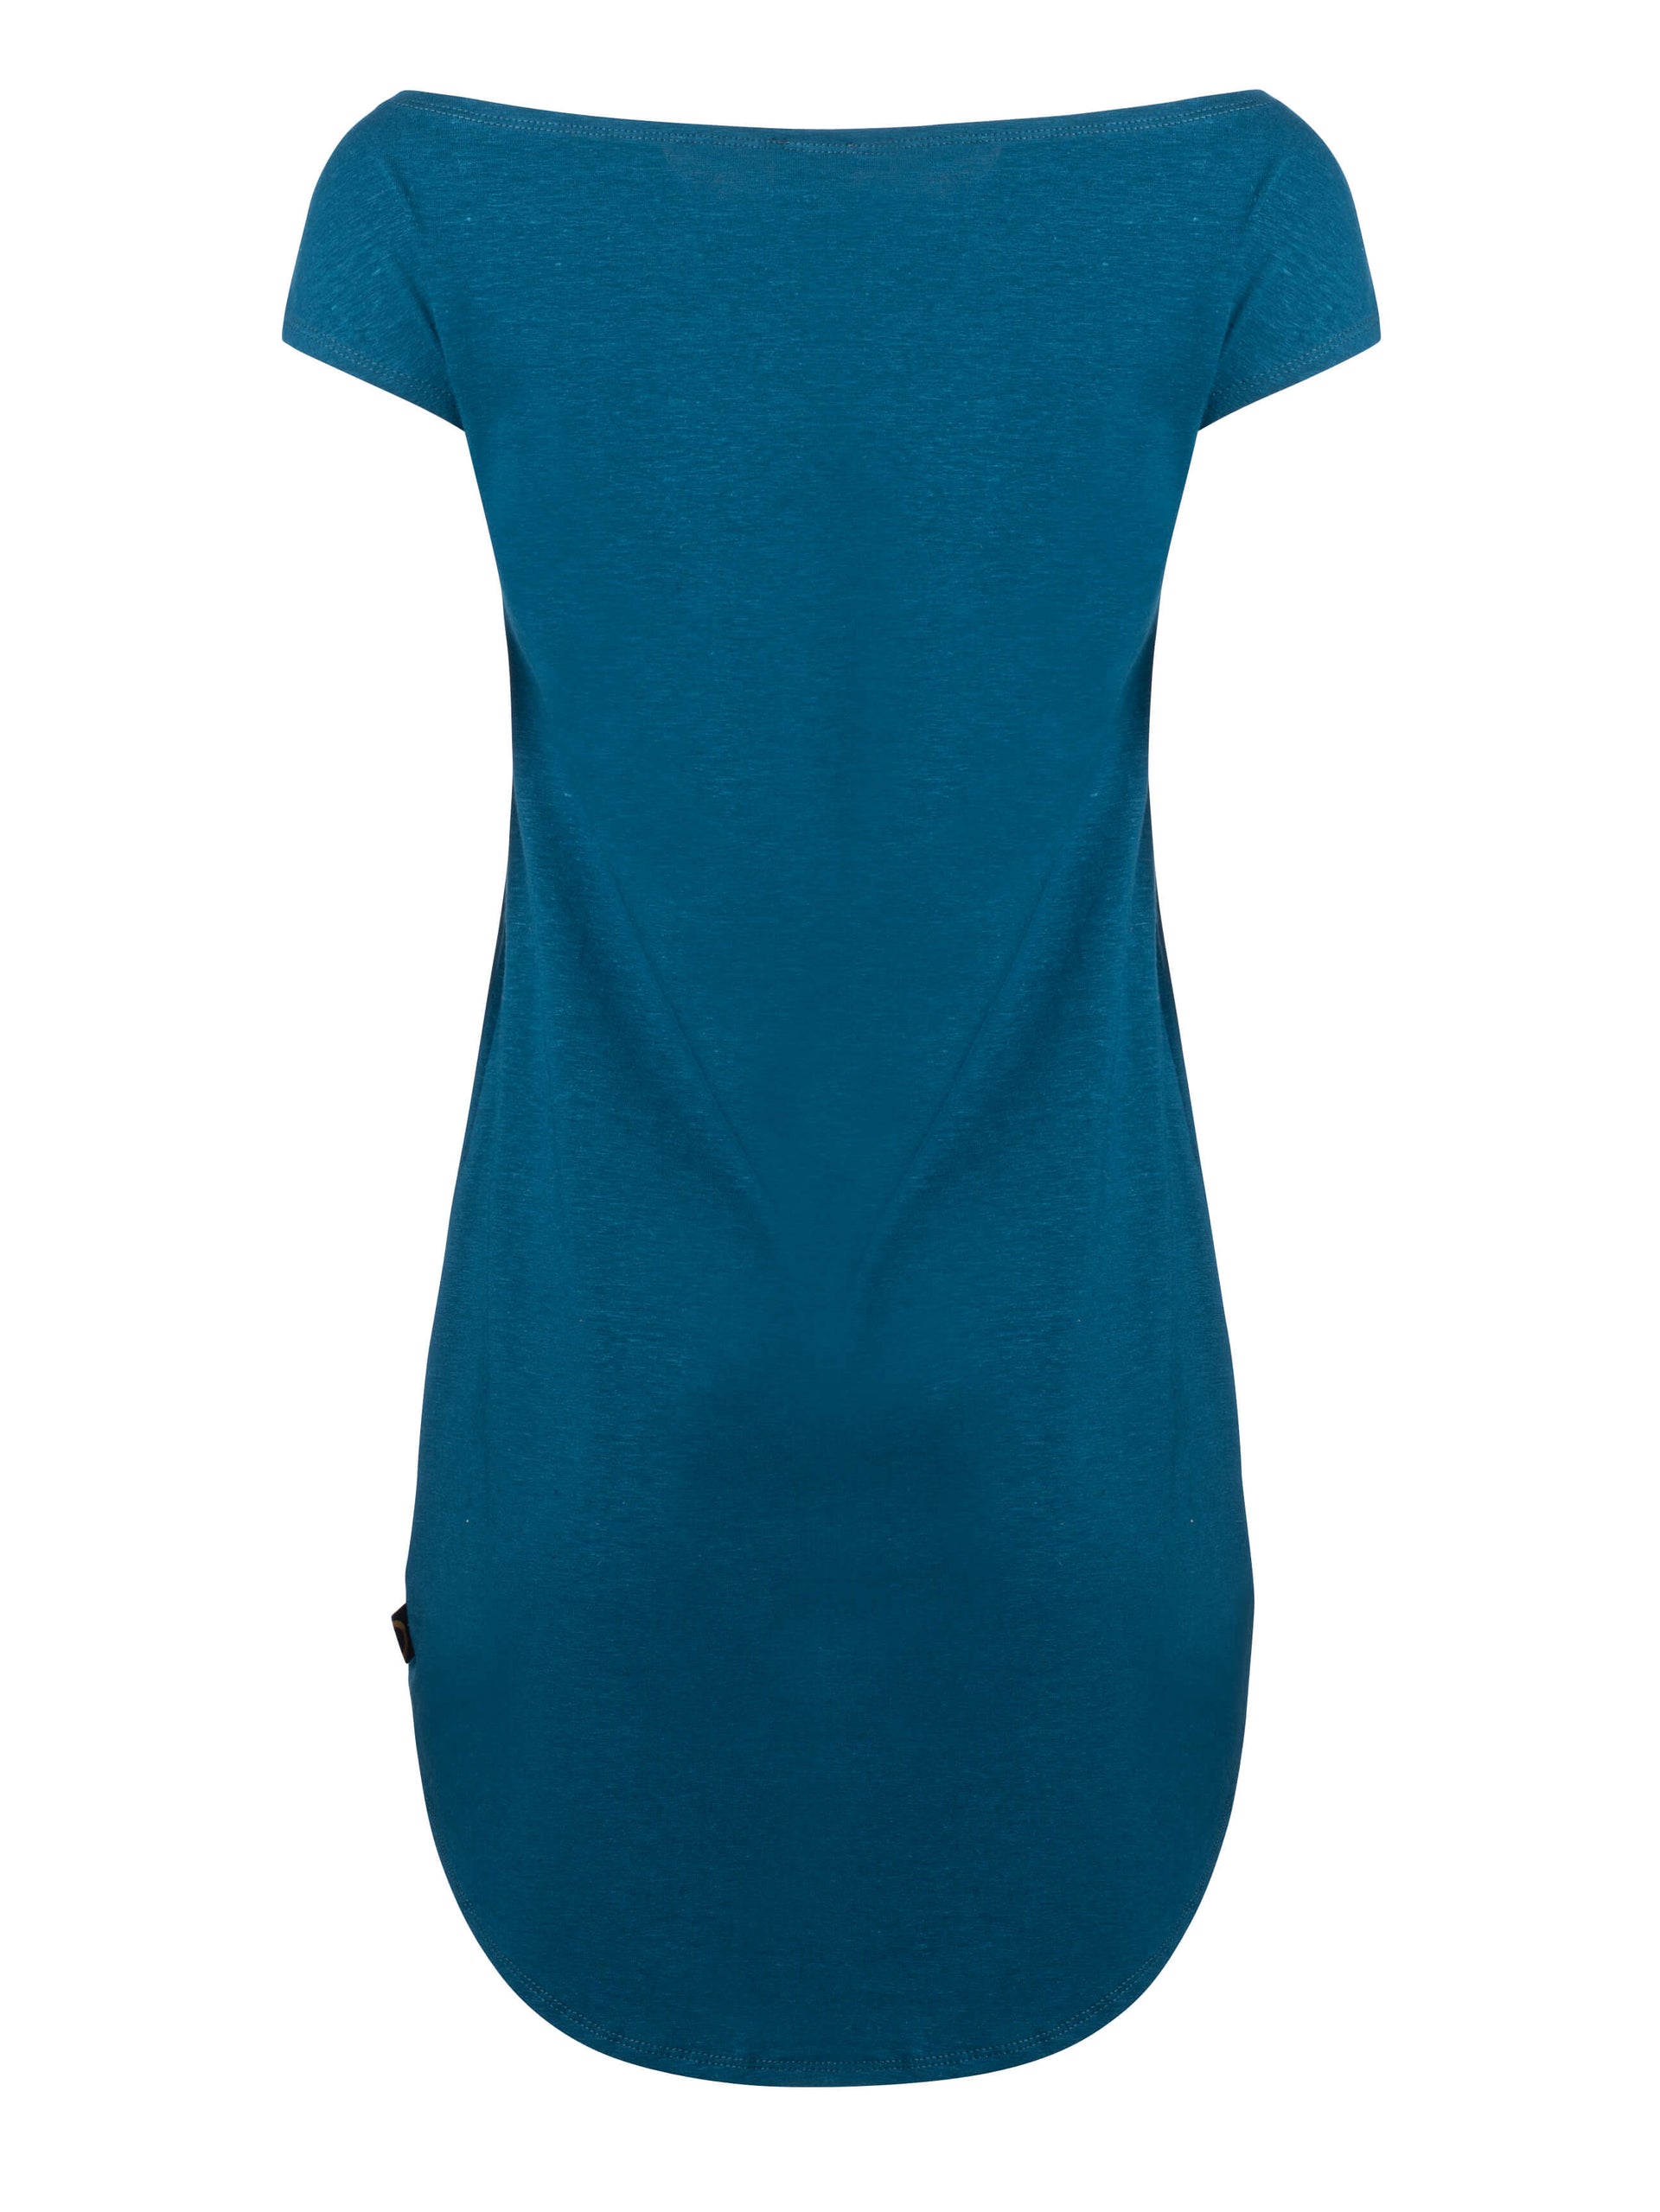 Robe tunique-RIVIERE-tencel coton bio-bleu-femme-ghost-FC22T2